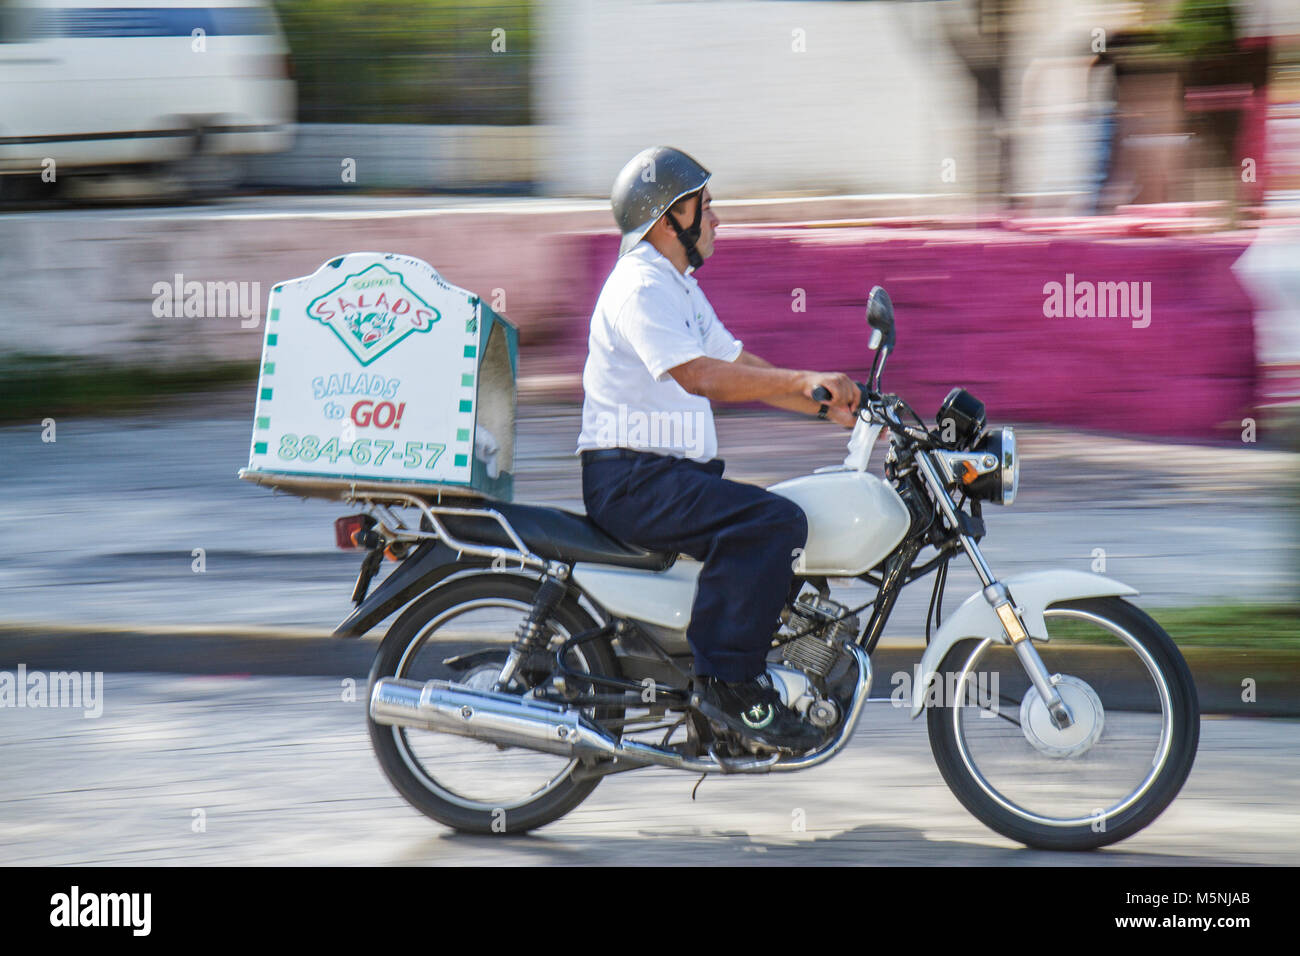 Cancun Mexique,Mexicain,Avenida Sunyaxchen,Hispanic man hommes adultes adultes,moto,livraison de nourriture,salades à emporter,casque,en mouvement,Mex101216039 Banque D'Images